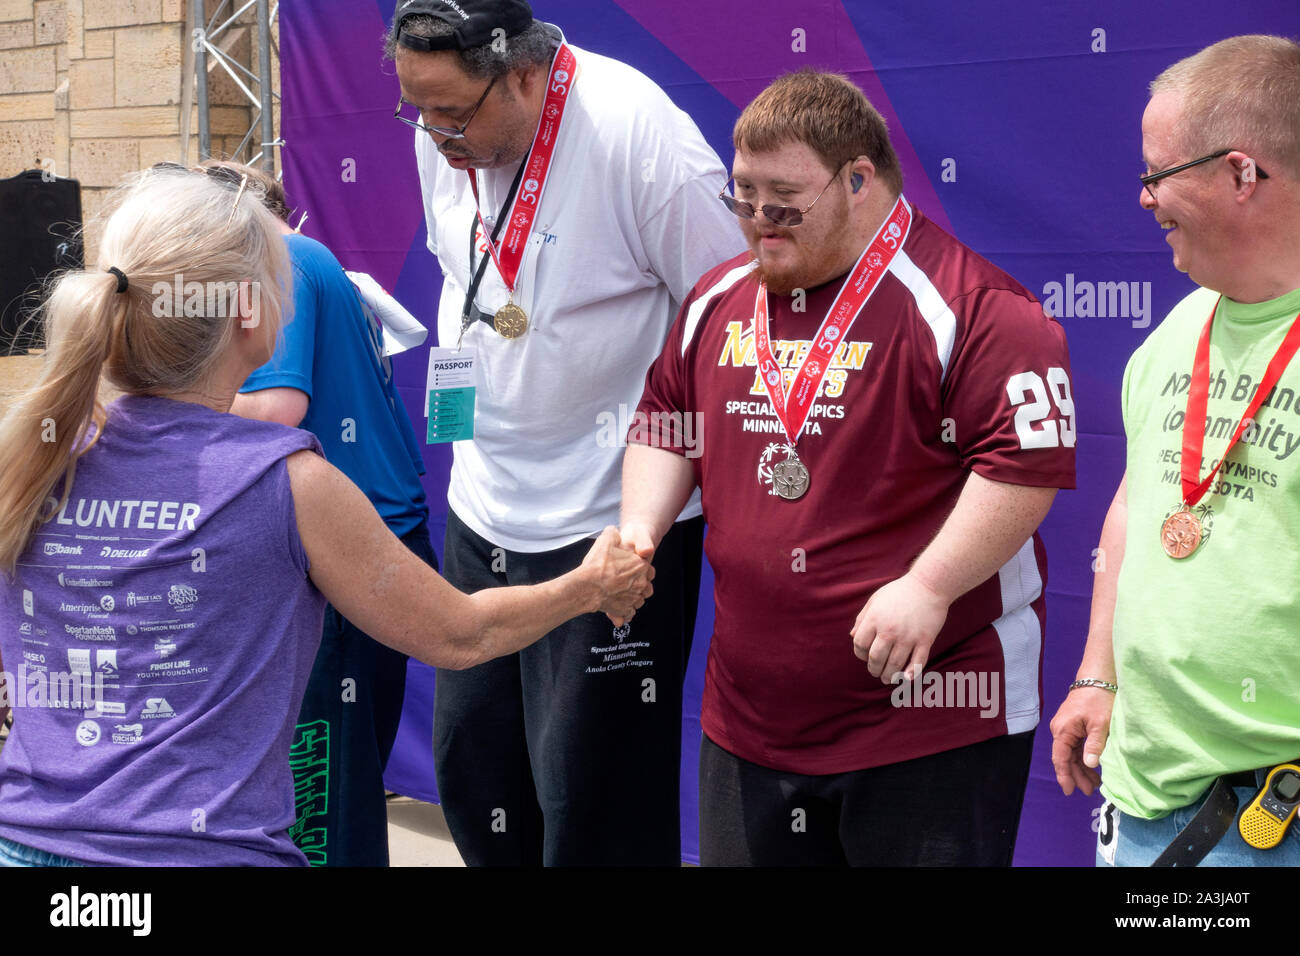 Bespeckled spezieller Olympier einer congratulatory Handshake nach seiner Medaille erhalten. St. Paul Minnesota MN USA Stockfoto